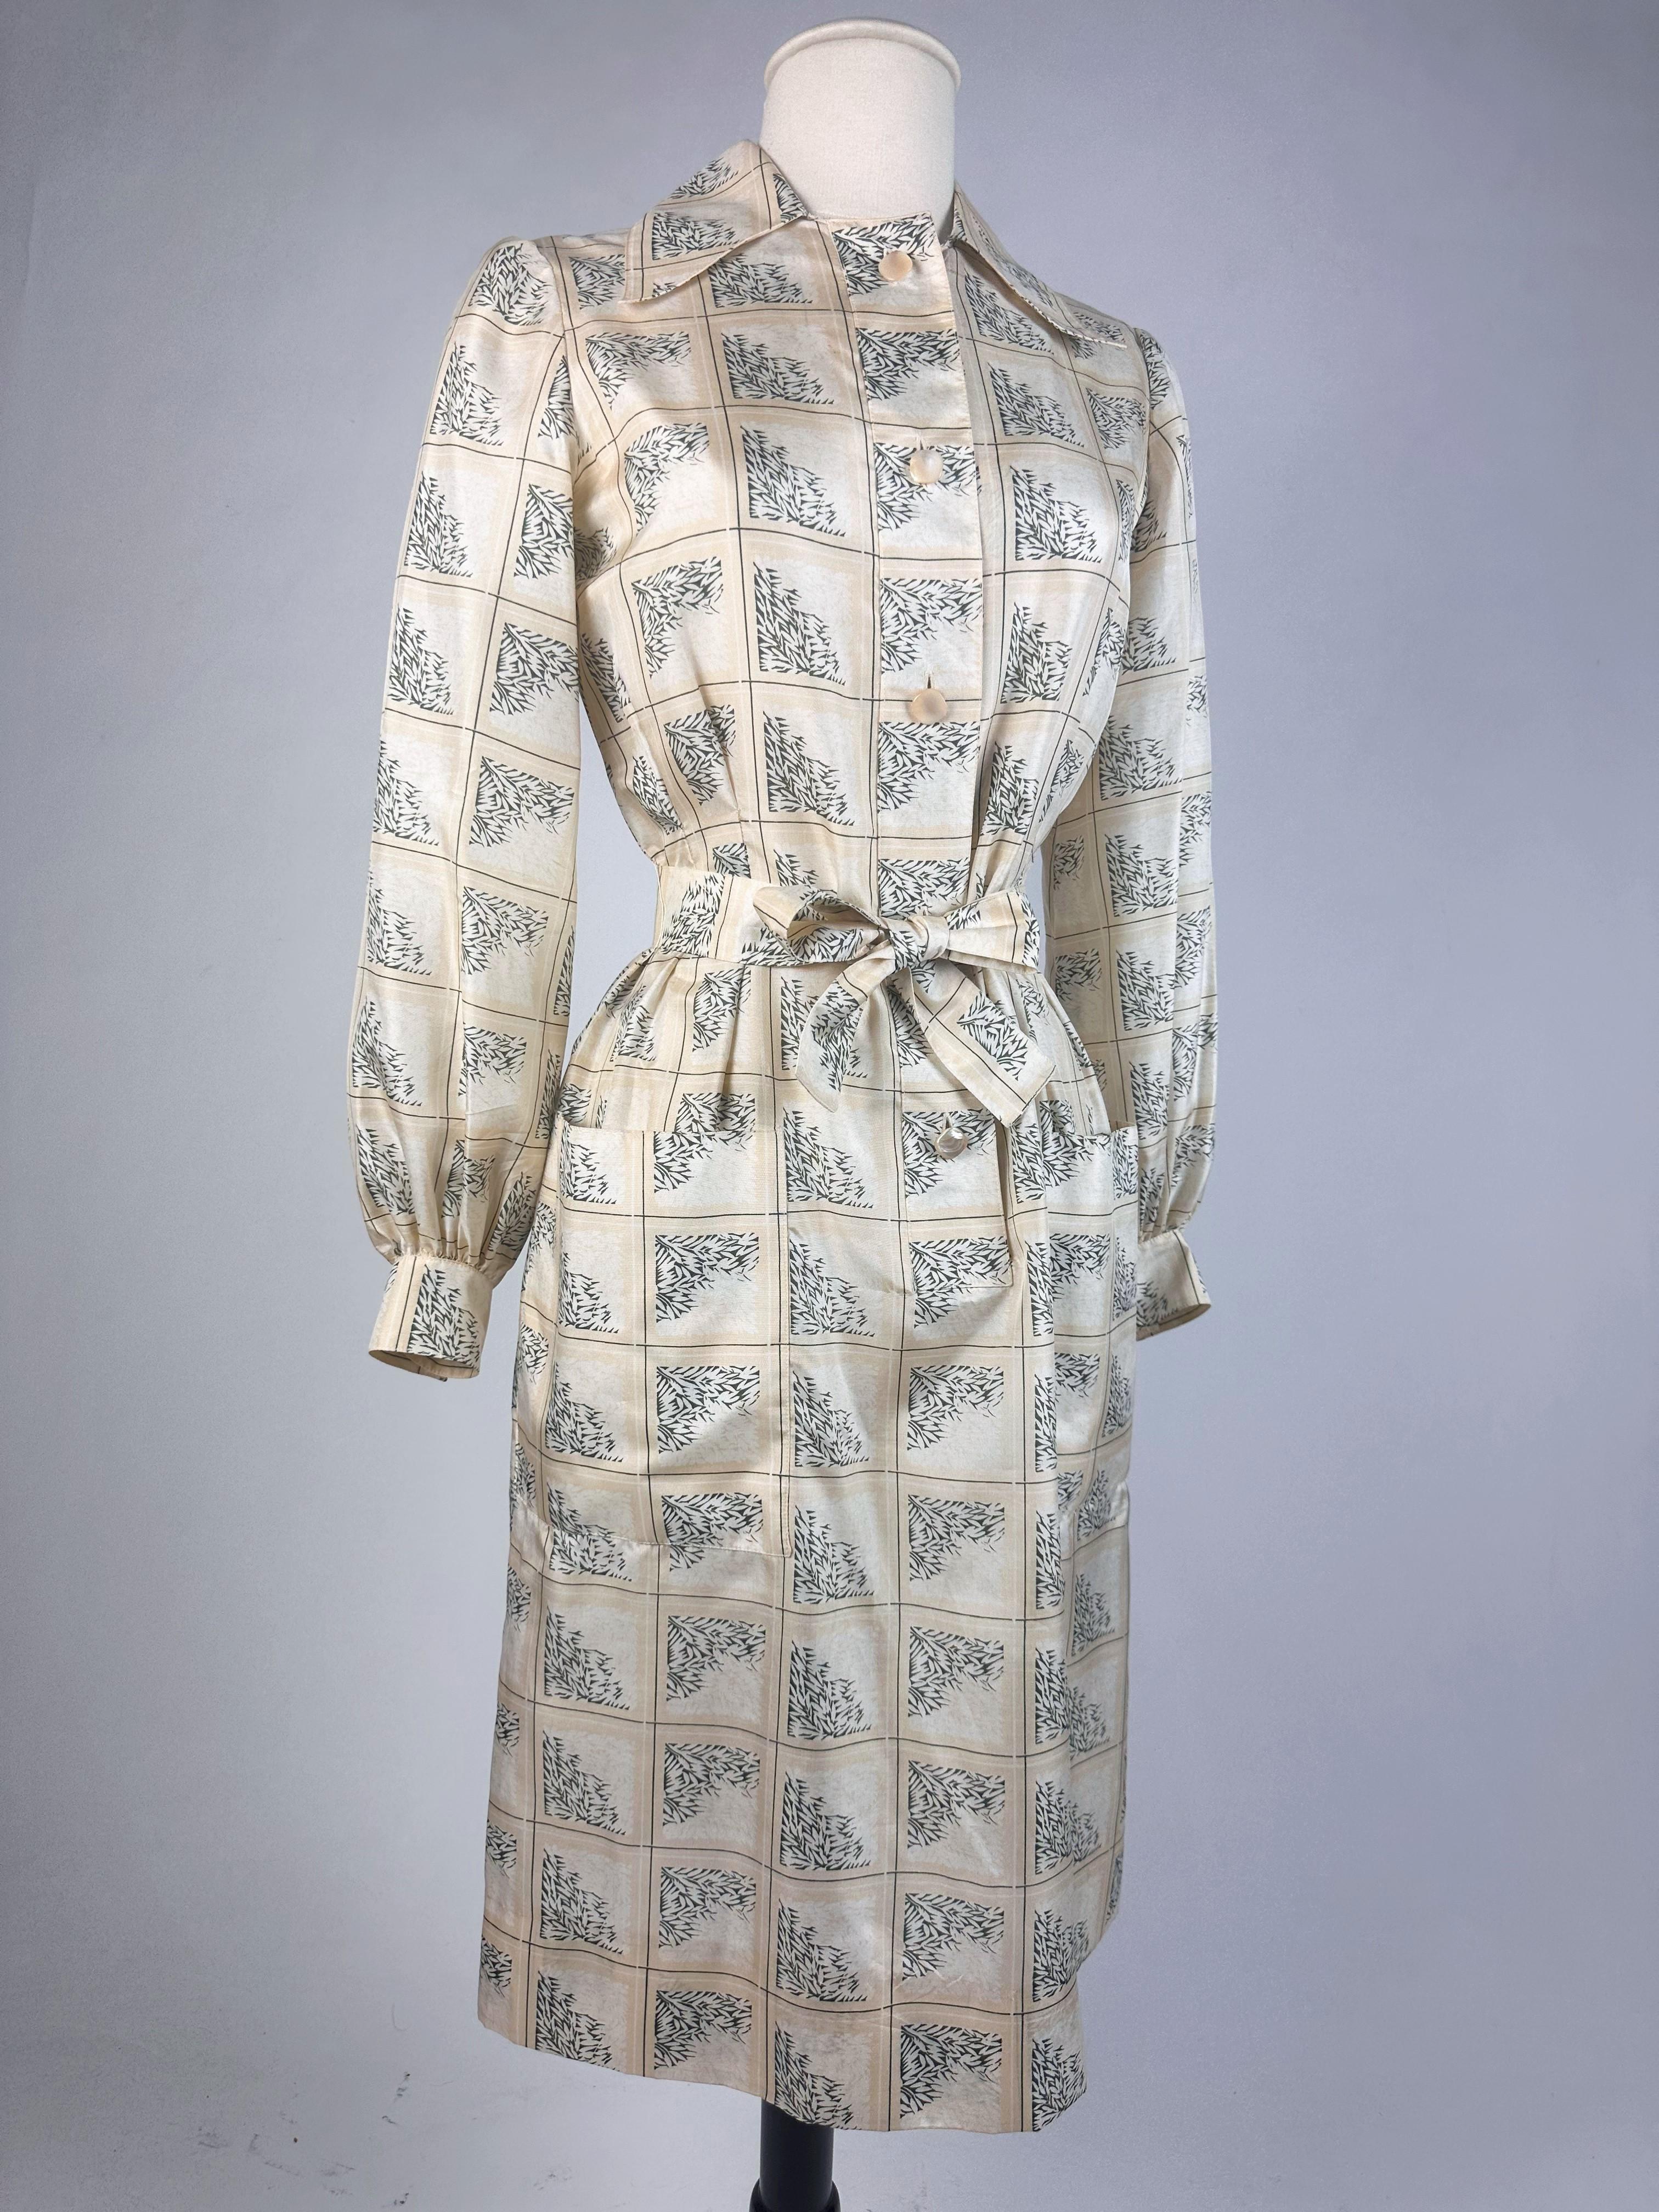 Blouse dress in printed taffeta by Gérard Pipart for Nina Ricci Circa 1985 6